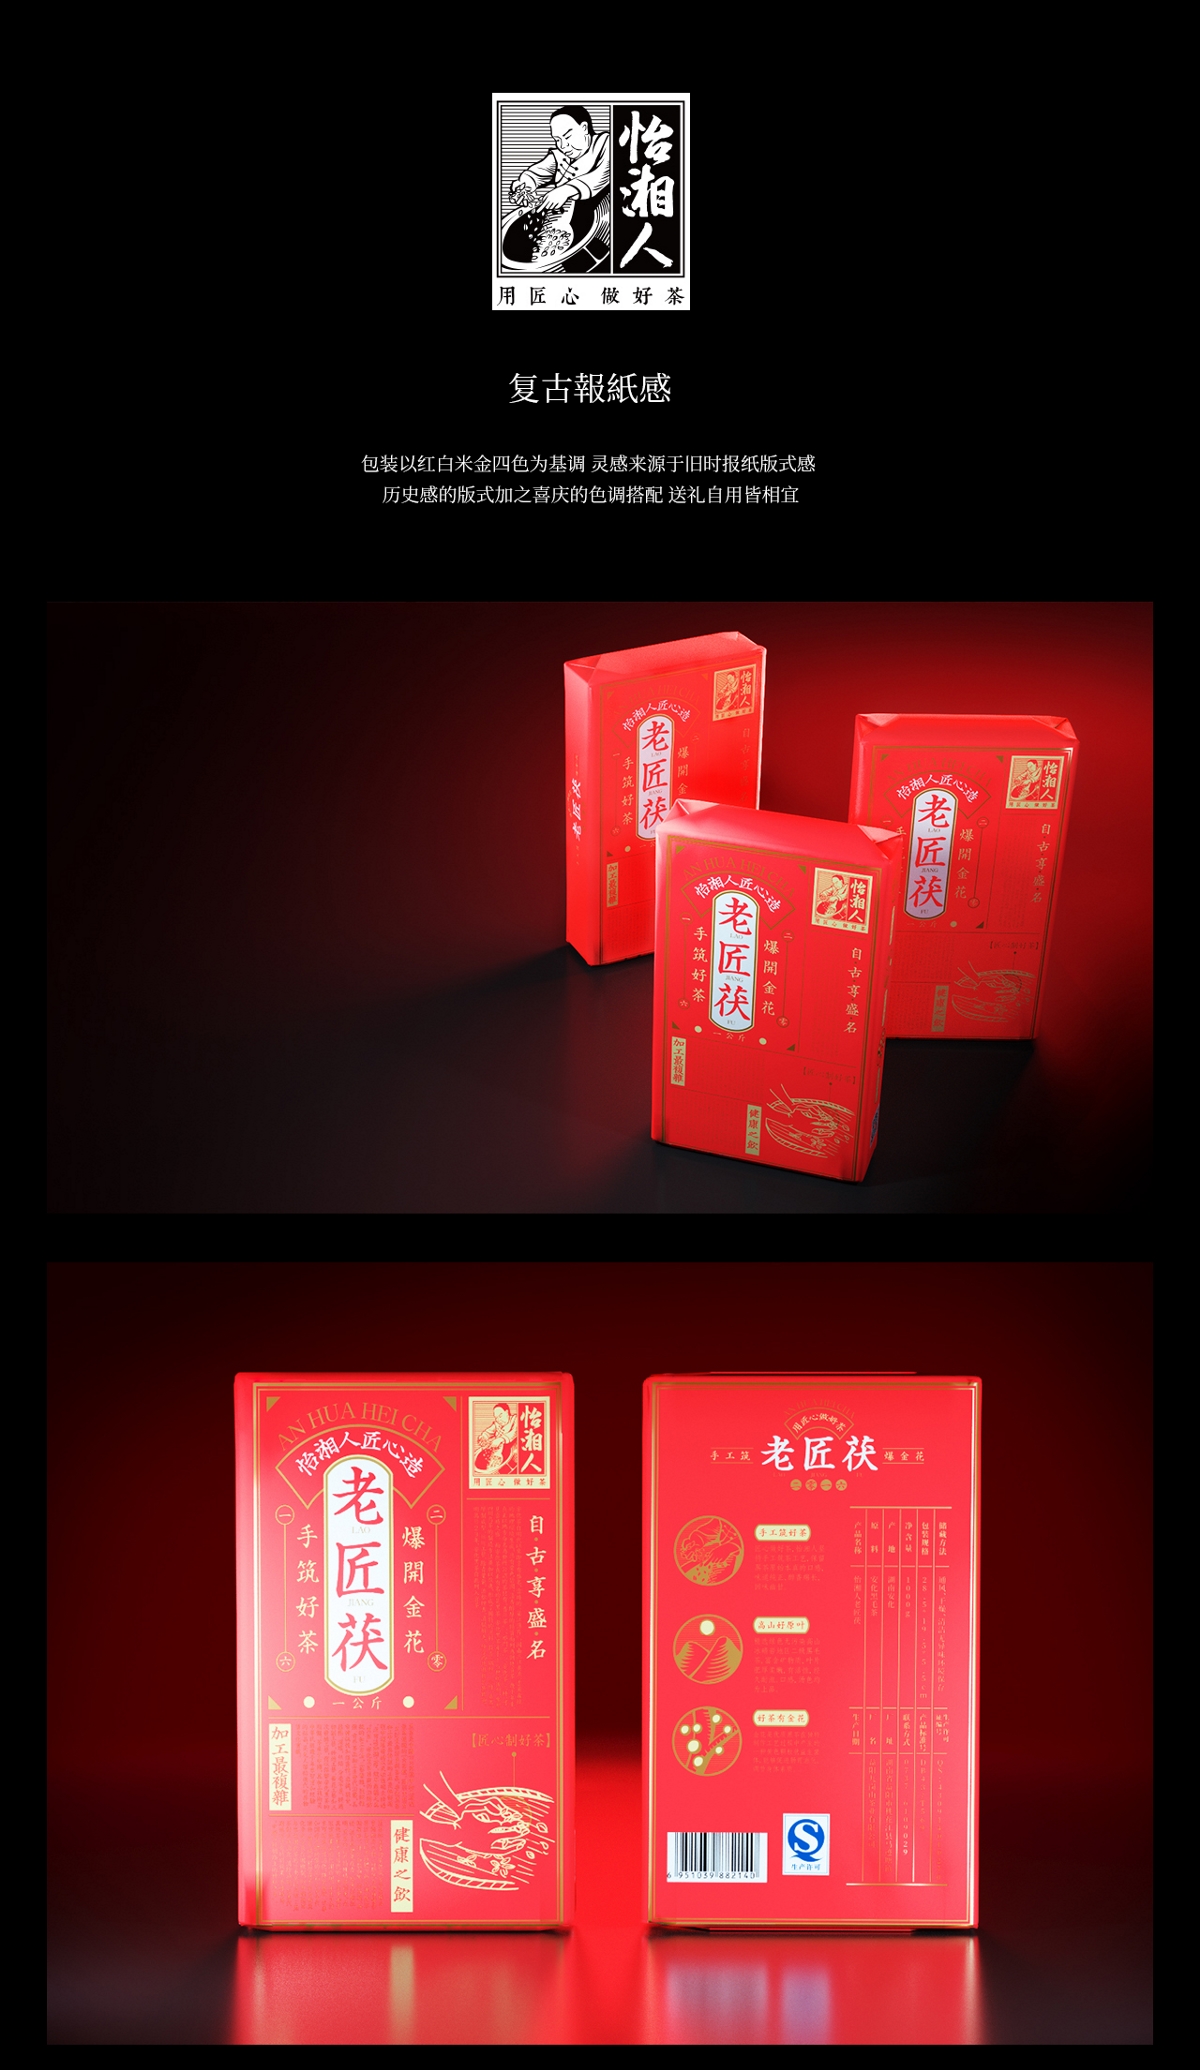 怡湘人|湖南安化黑茶茯砖茶复古中式包装设计| www.rufydesign.com